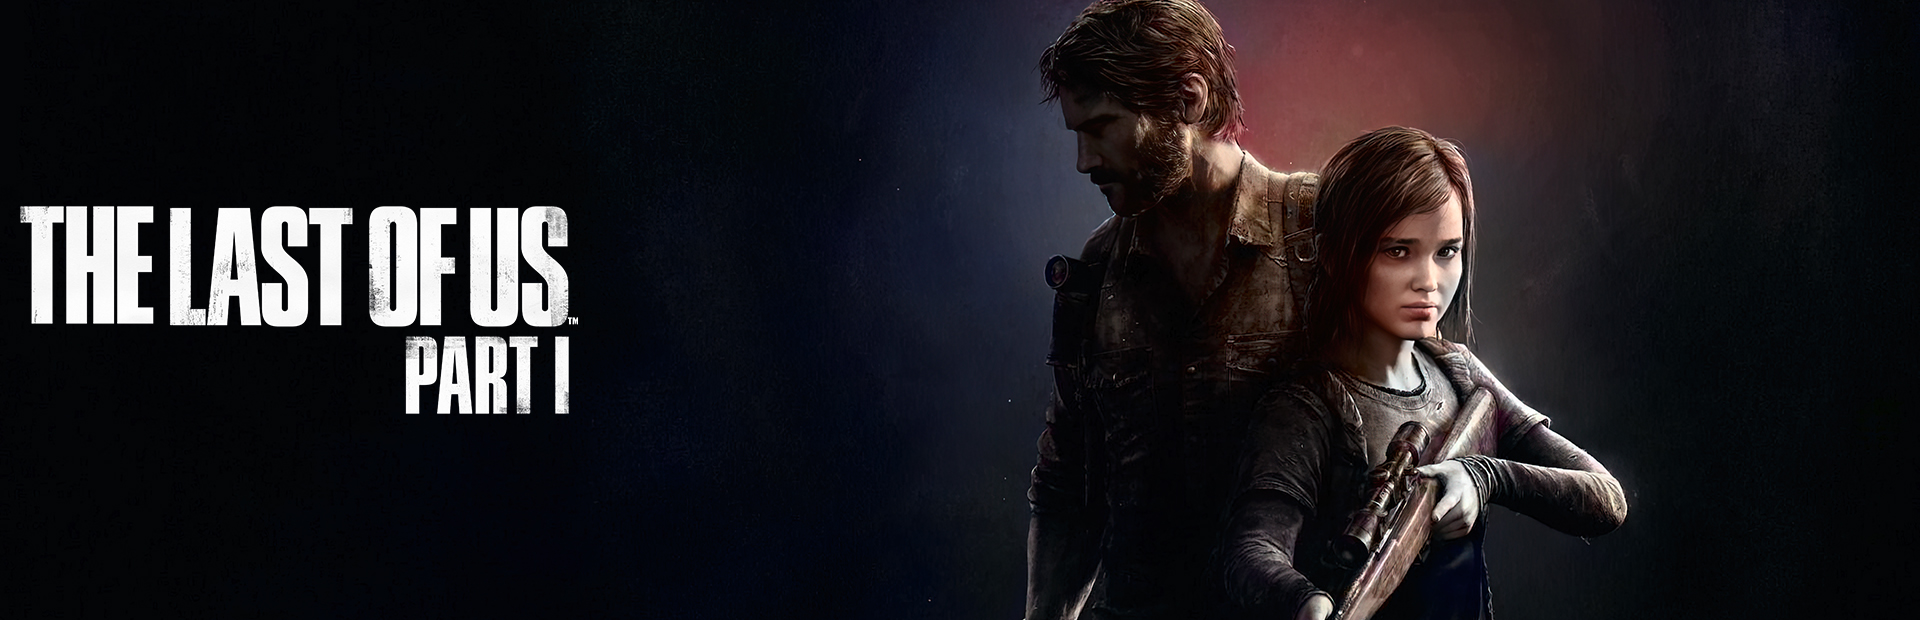 دانلود بازی The Last of Us Part I برای پی سی | گیمباتو